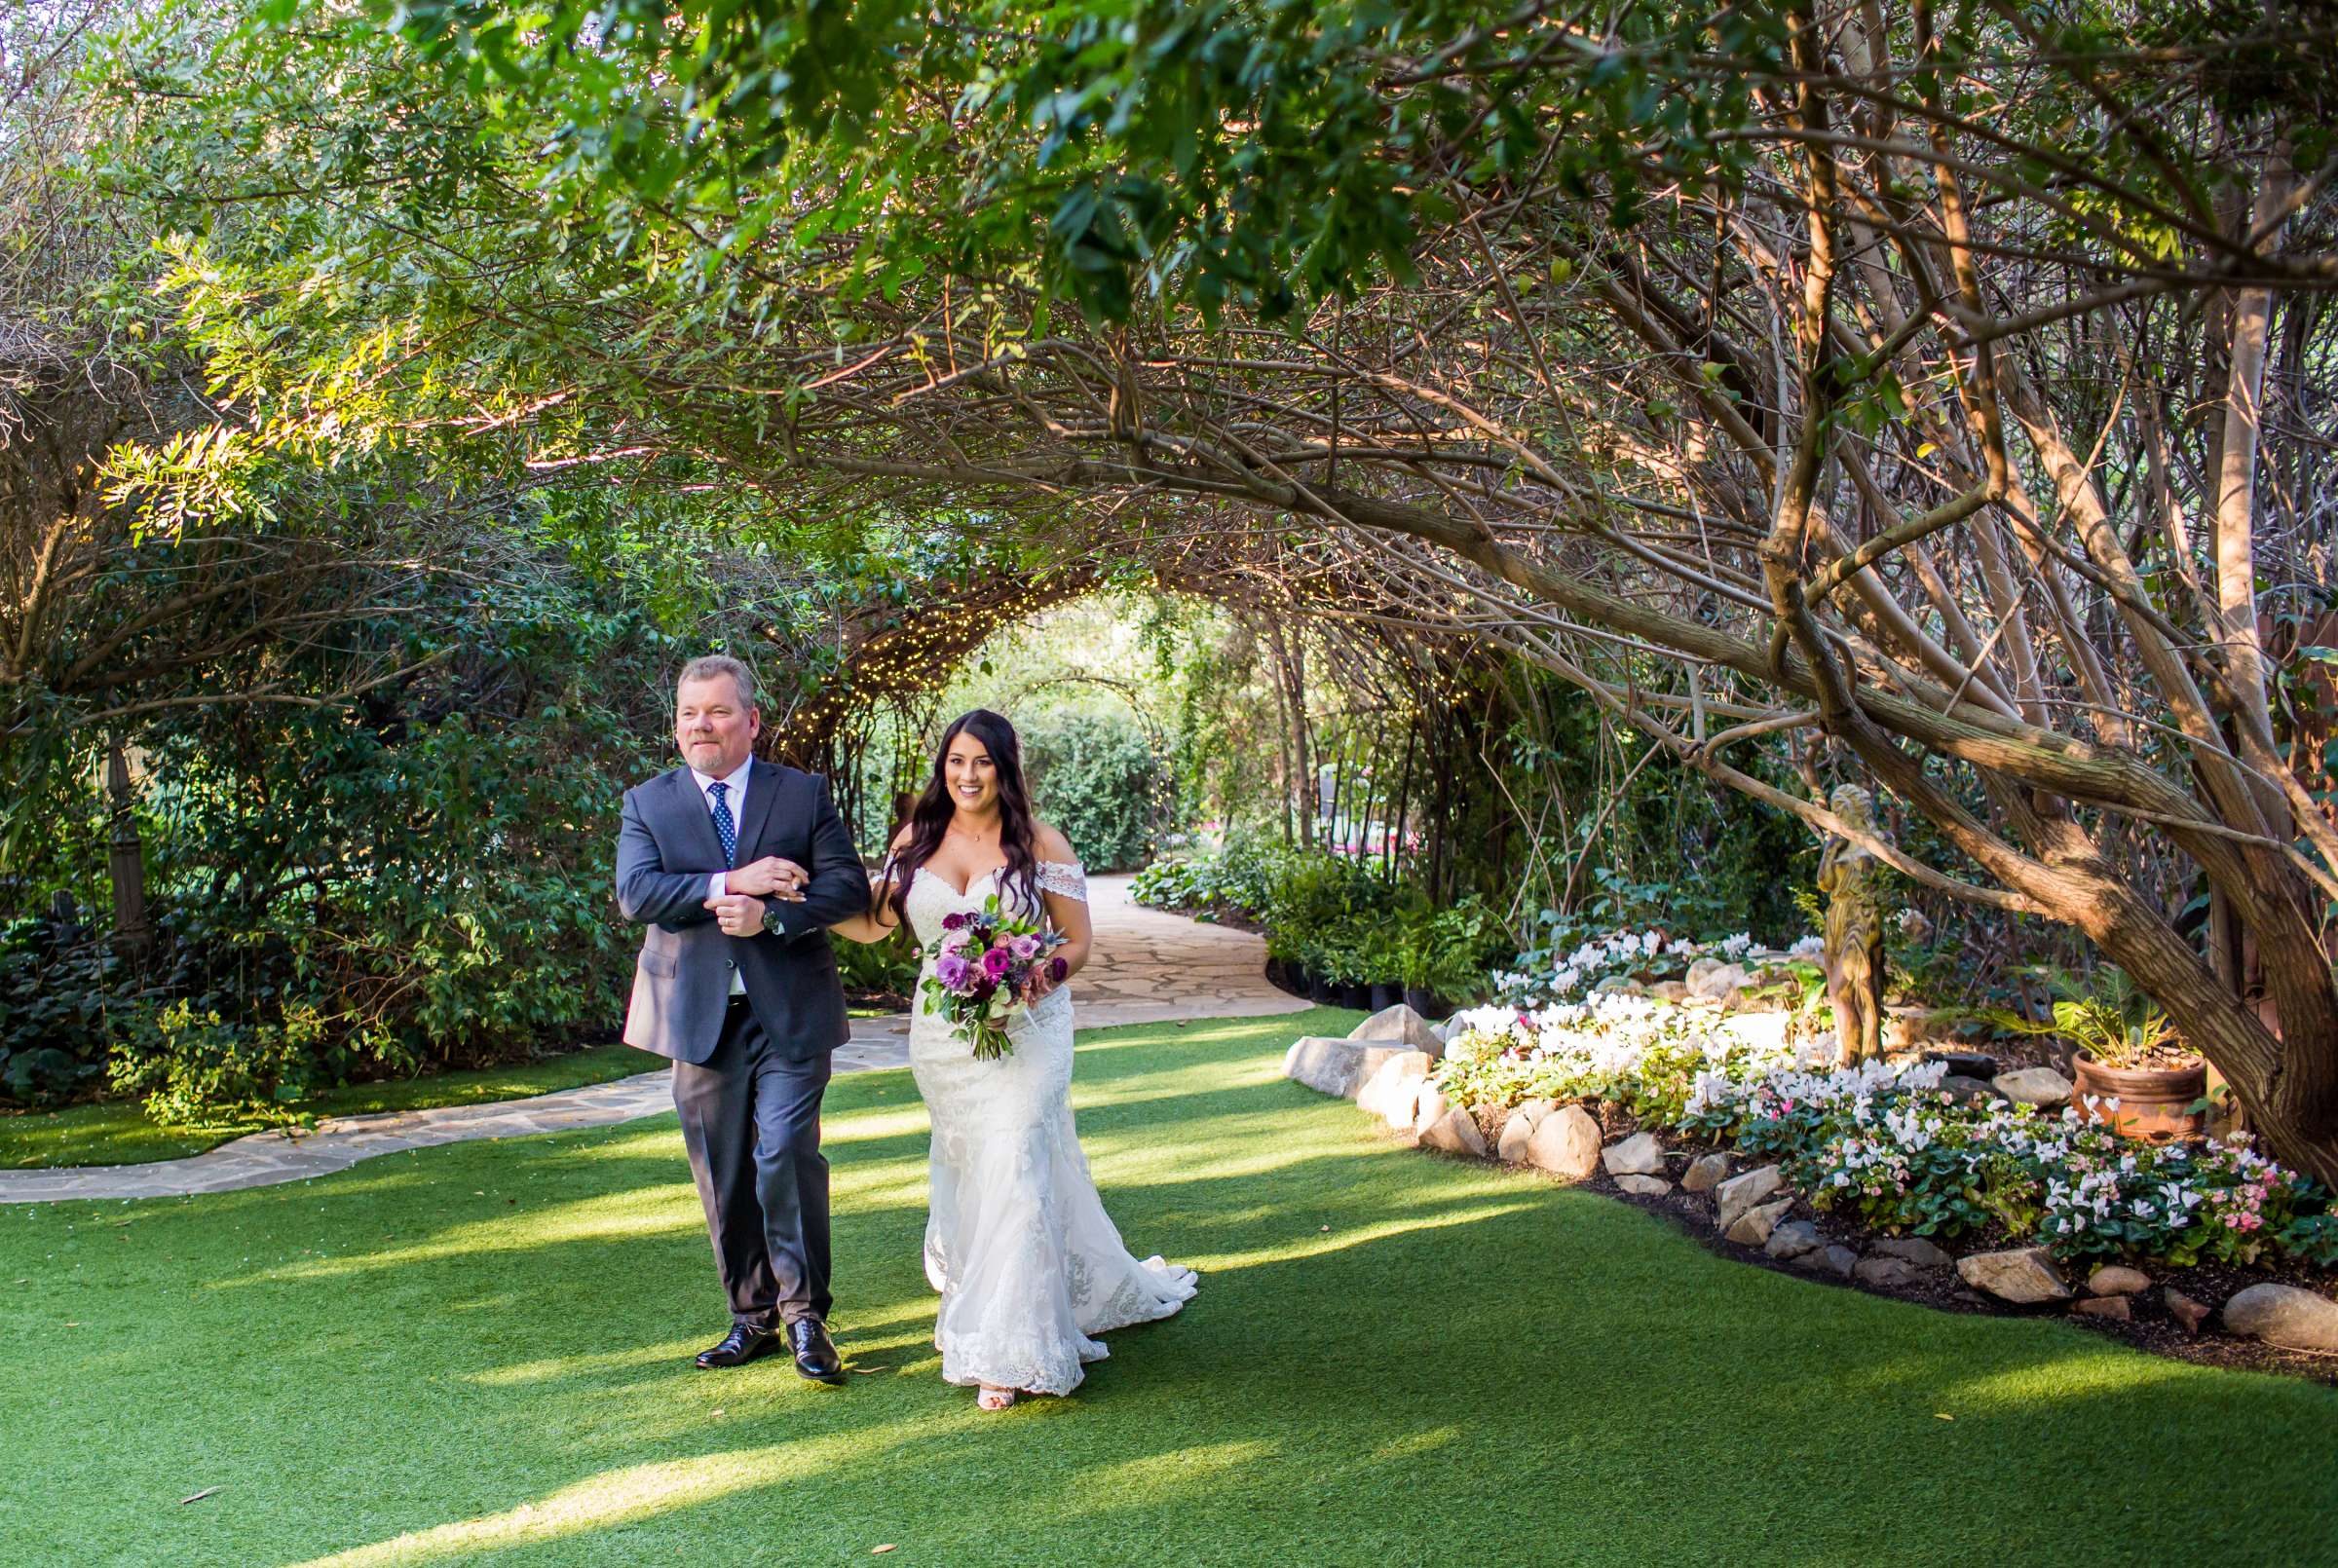 Twin Oaks House & Gardens Wedding Estate Wedding, Stephanie and Ilija Wedding Photo #62 by True Photography